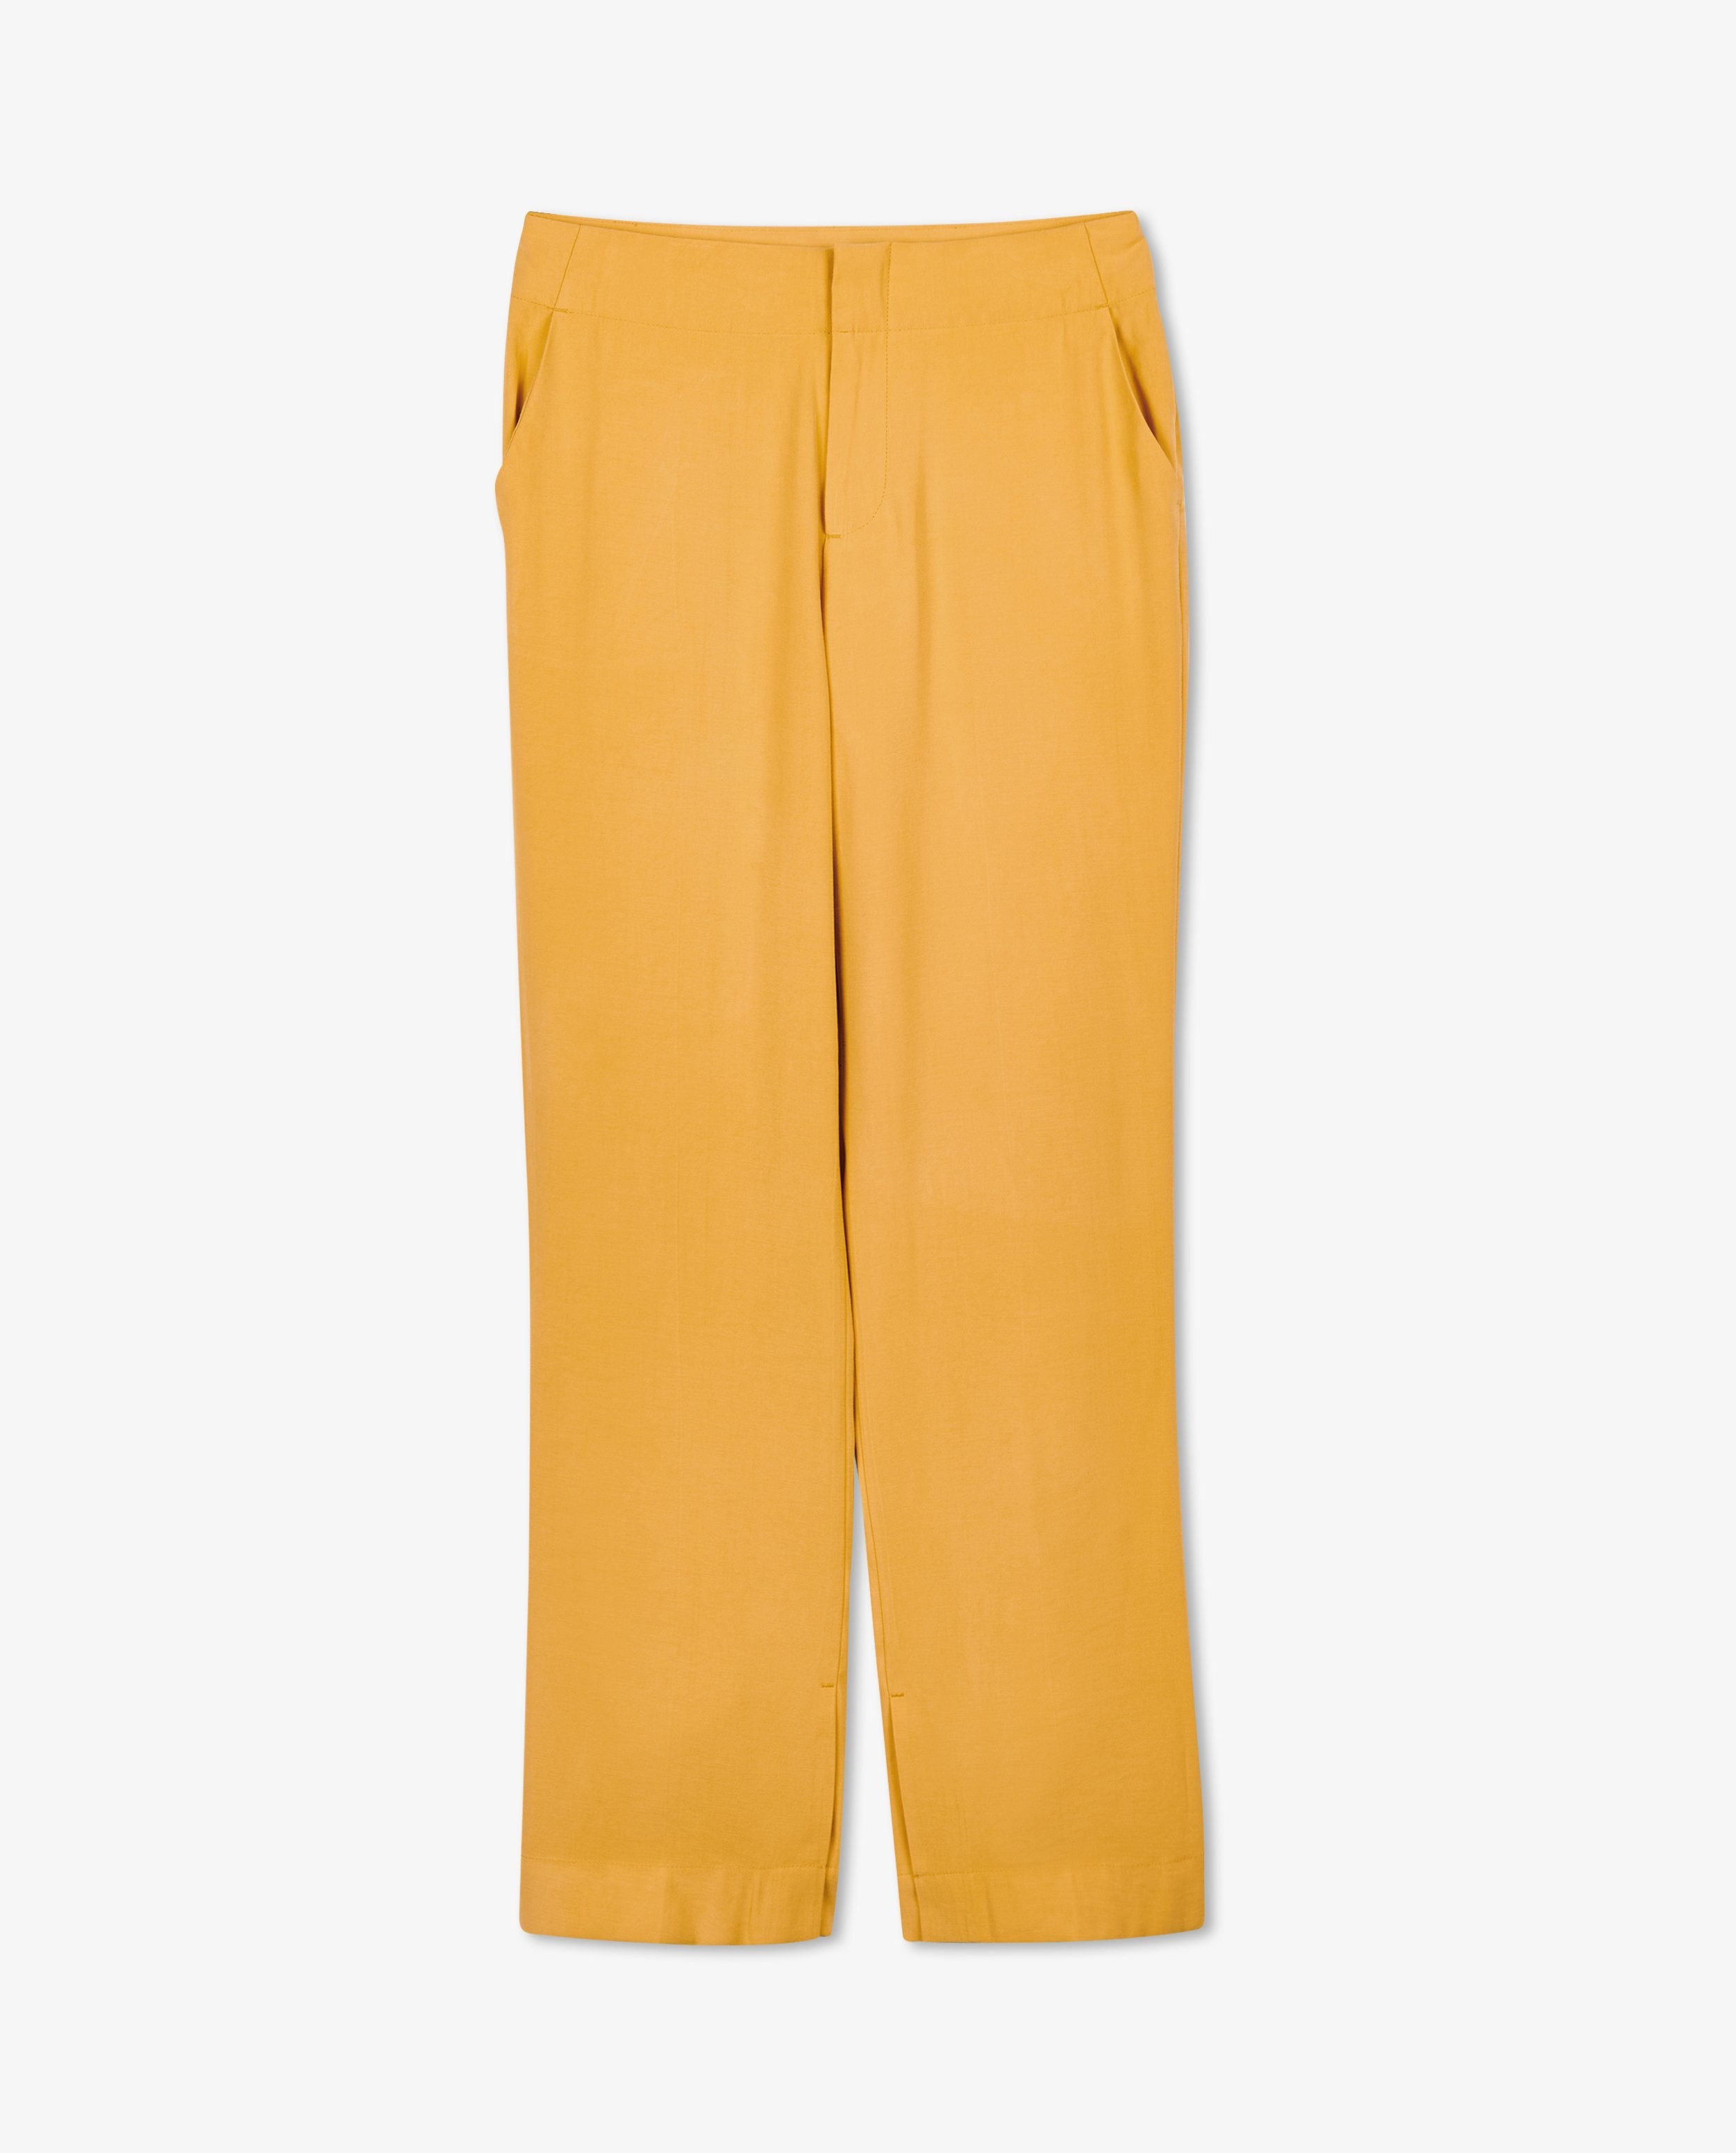 Pantalons - Pantalon jaune, coupe à jambes larges